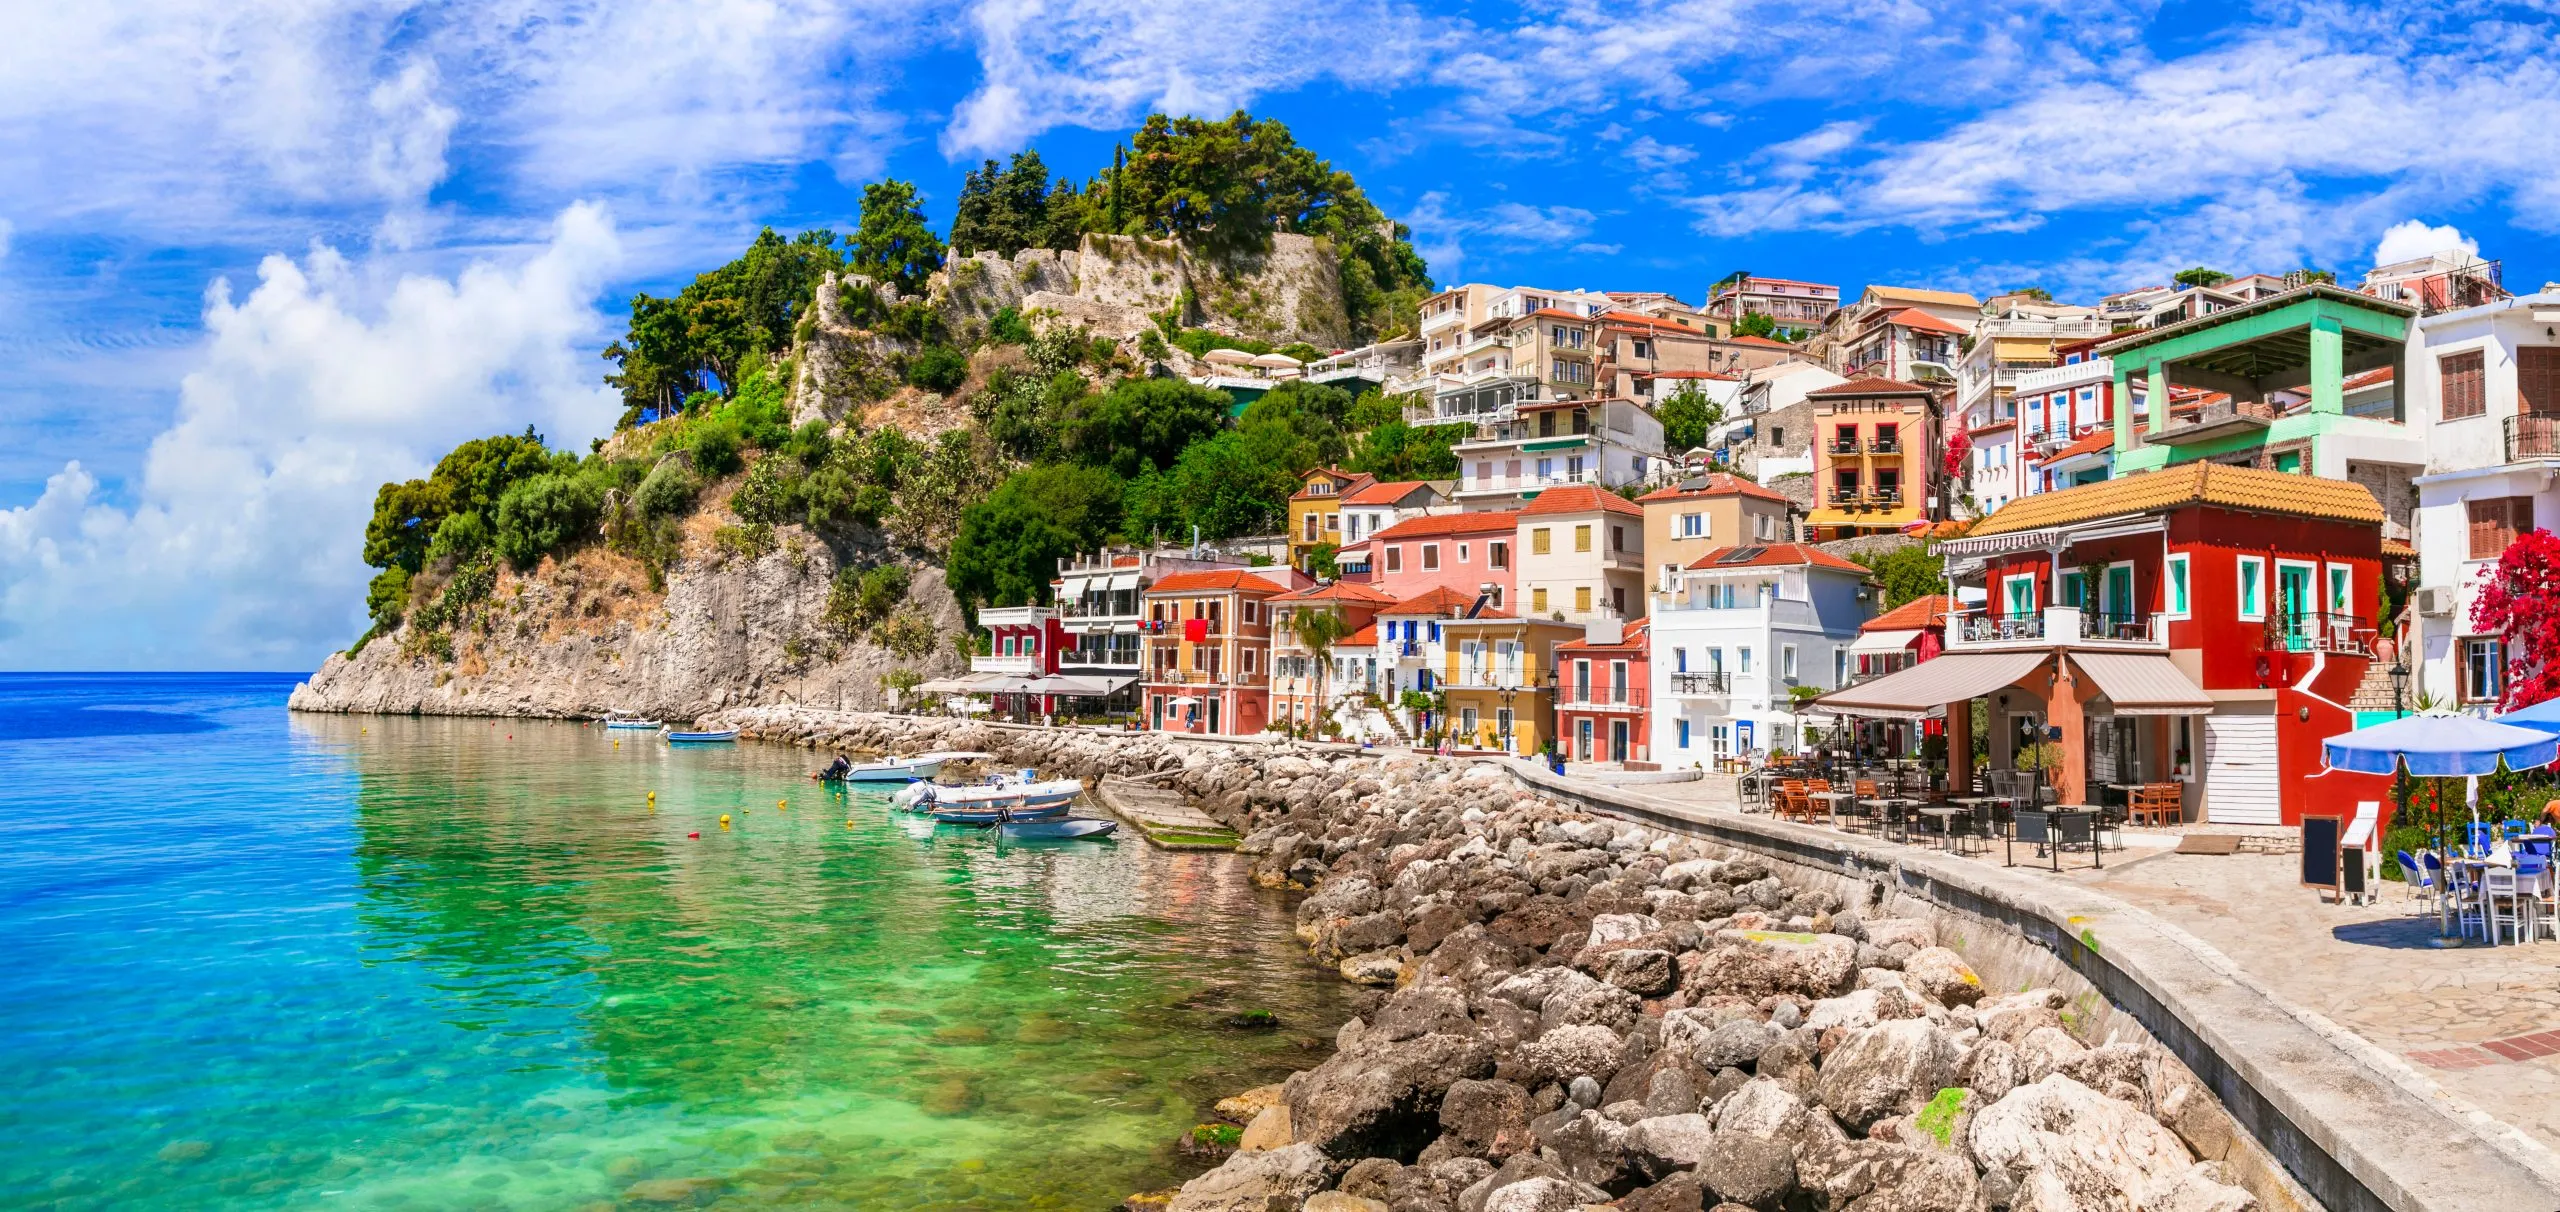 Coloful, la belle ville de Parga - une escapade parfaite sur la côte ionienne de la Grèce, une attraction touristique populaire et des vacances d'été en Épire.